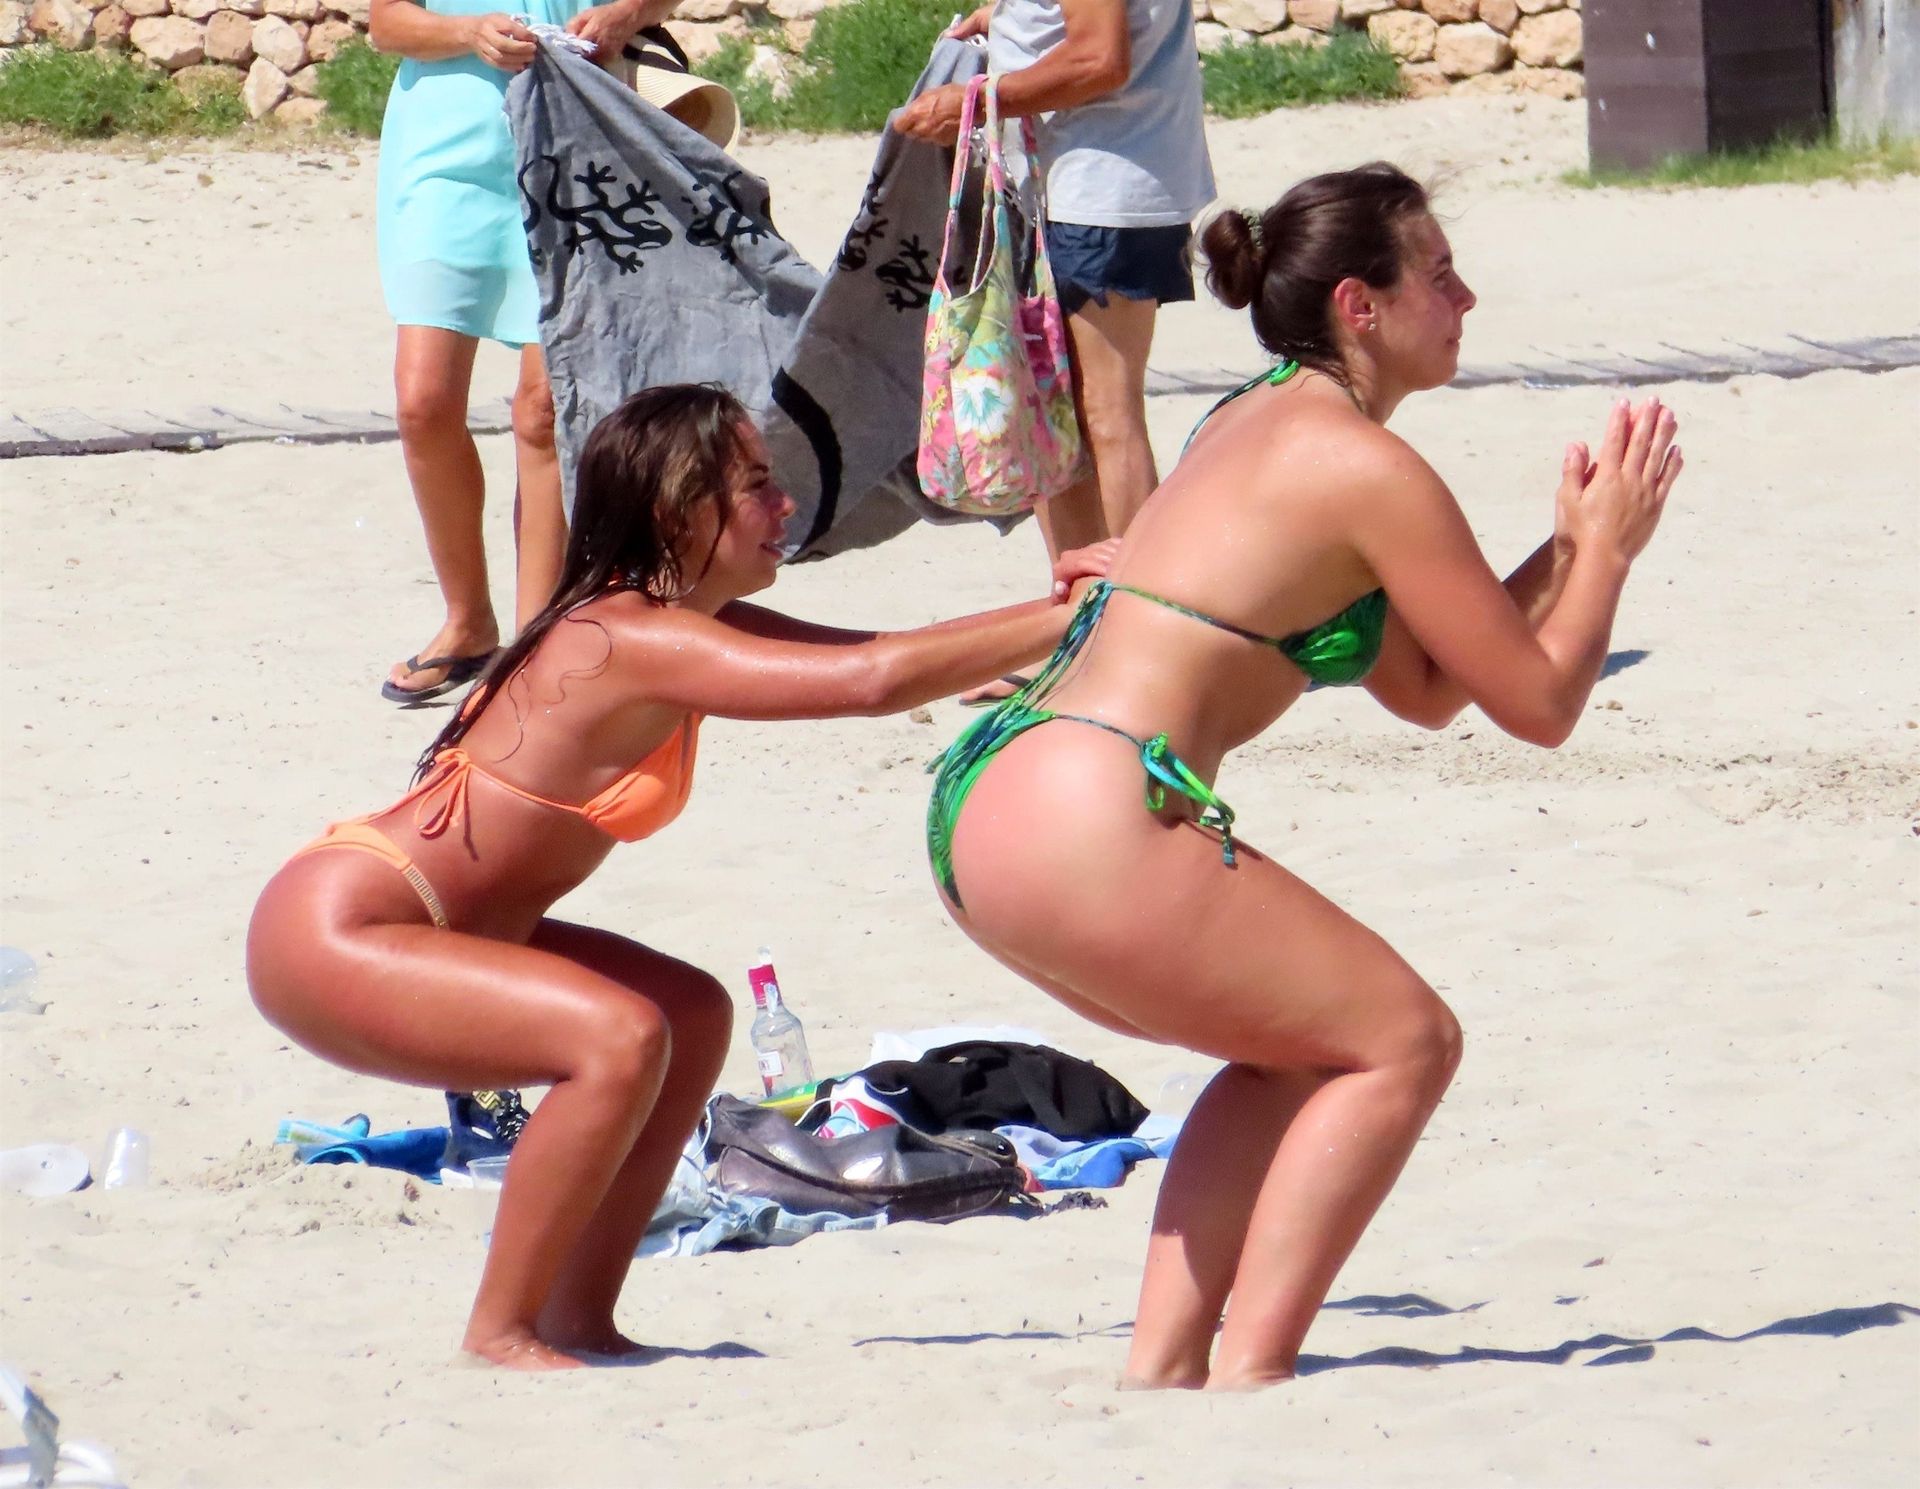 Francesca Allen, Georgia Steel, Elma Pazar Enjoy a Day in Ibiza (40 Photos)